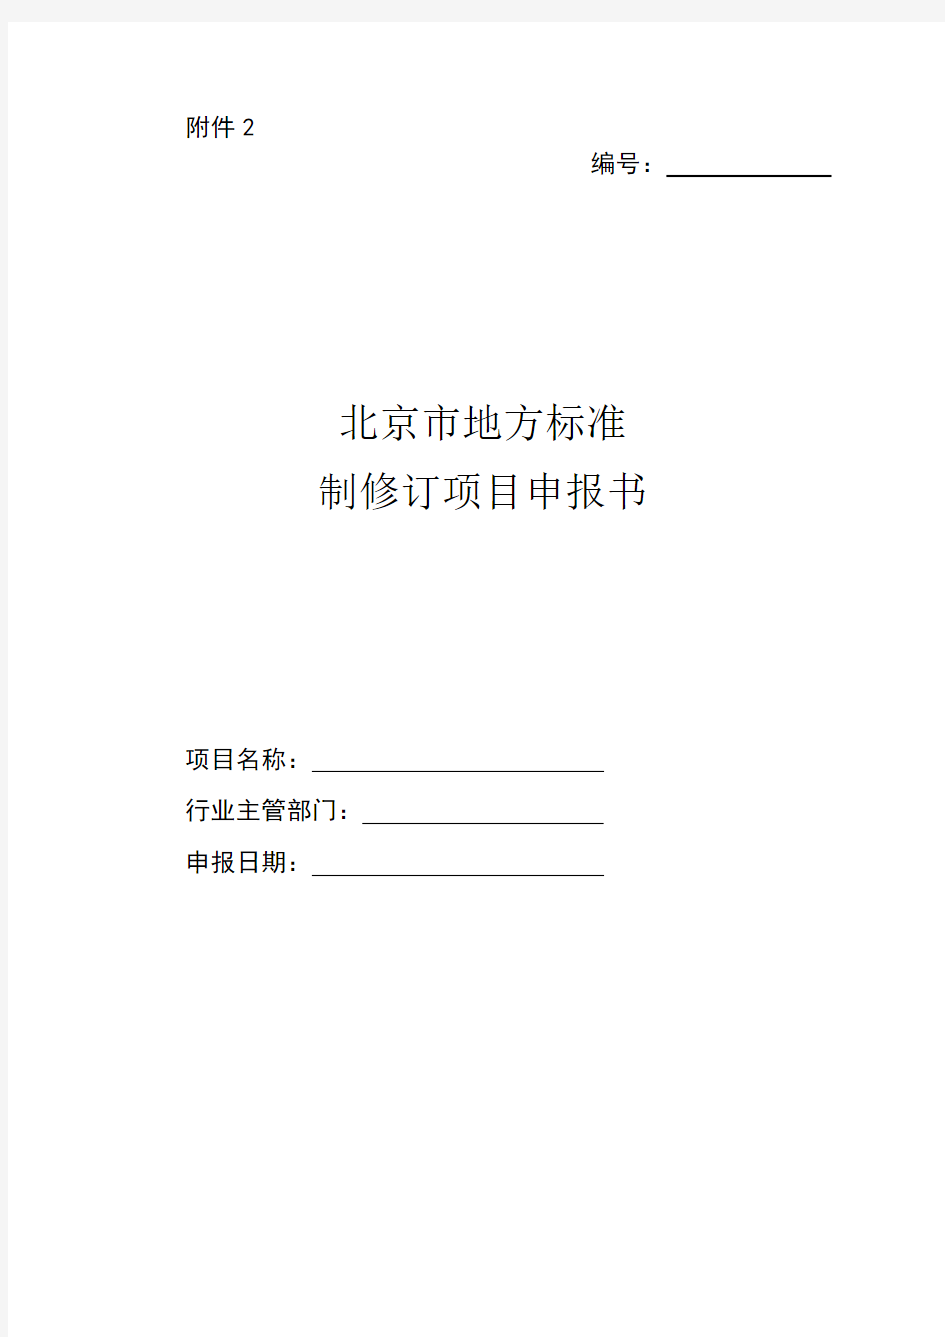 北京市地方标准制修订项目申报书-填写说明